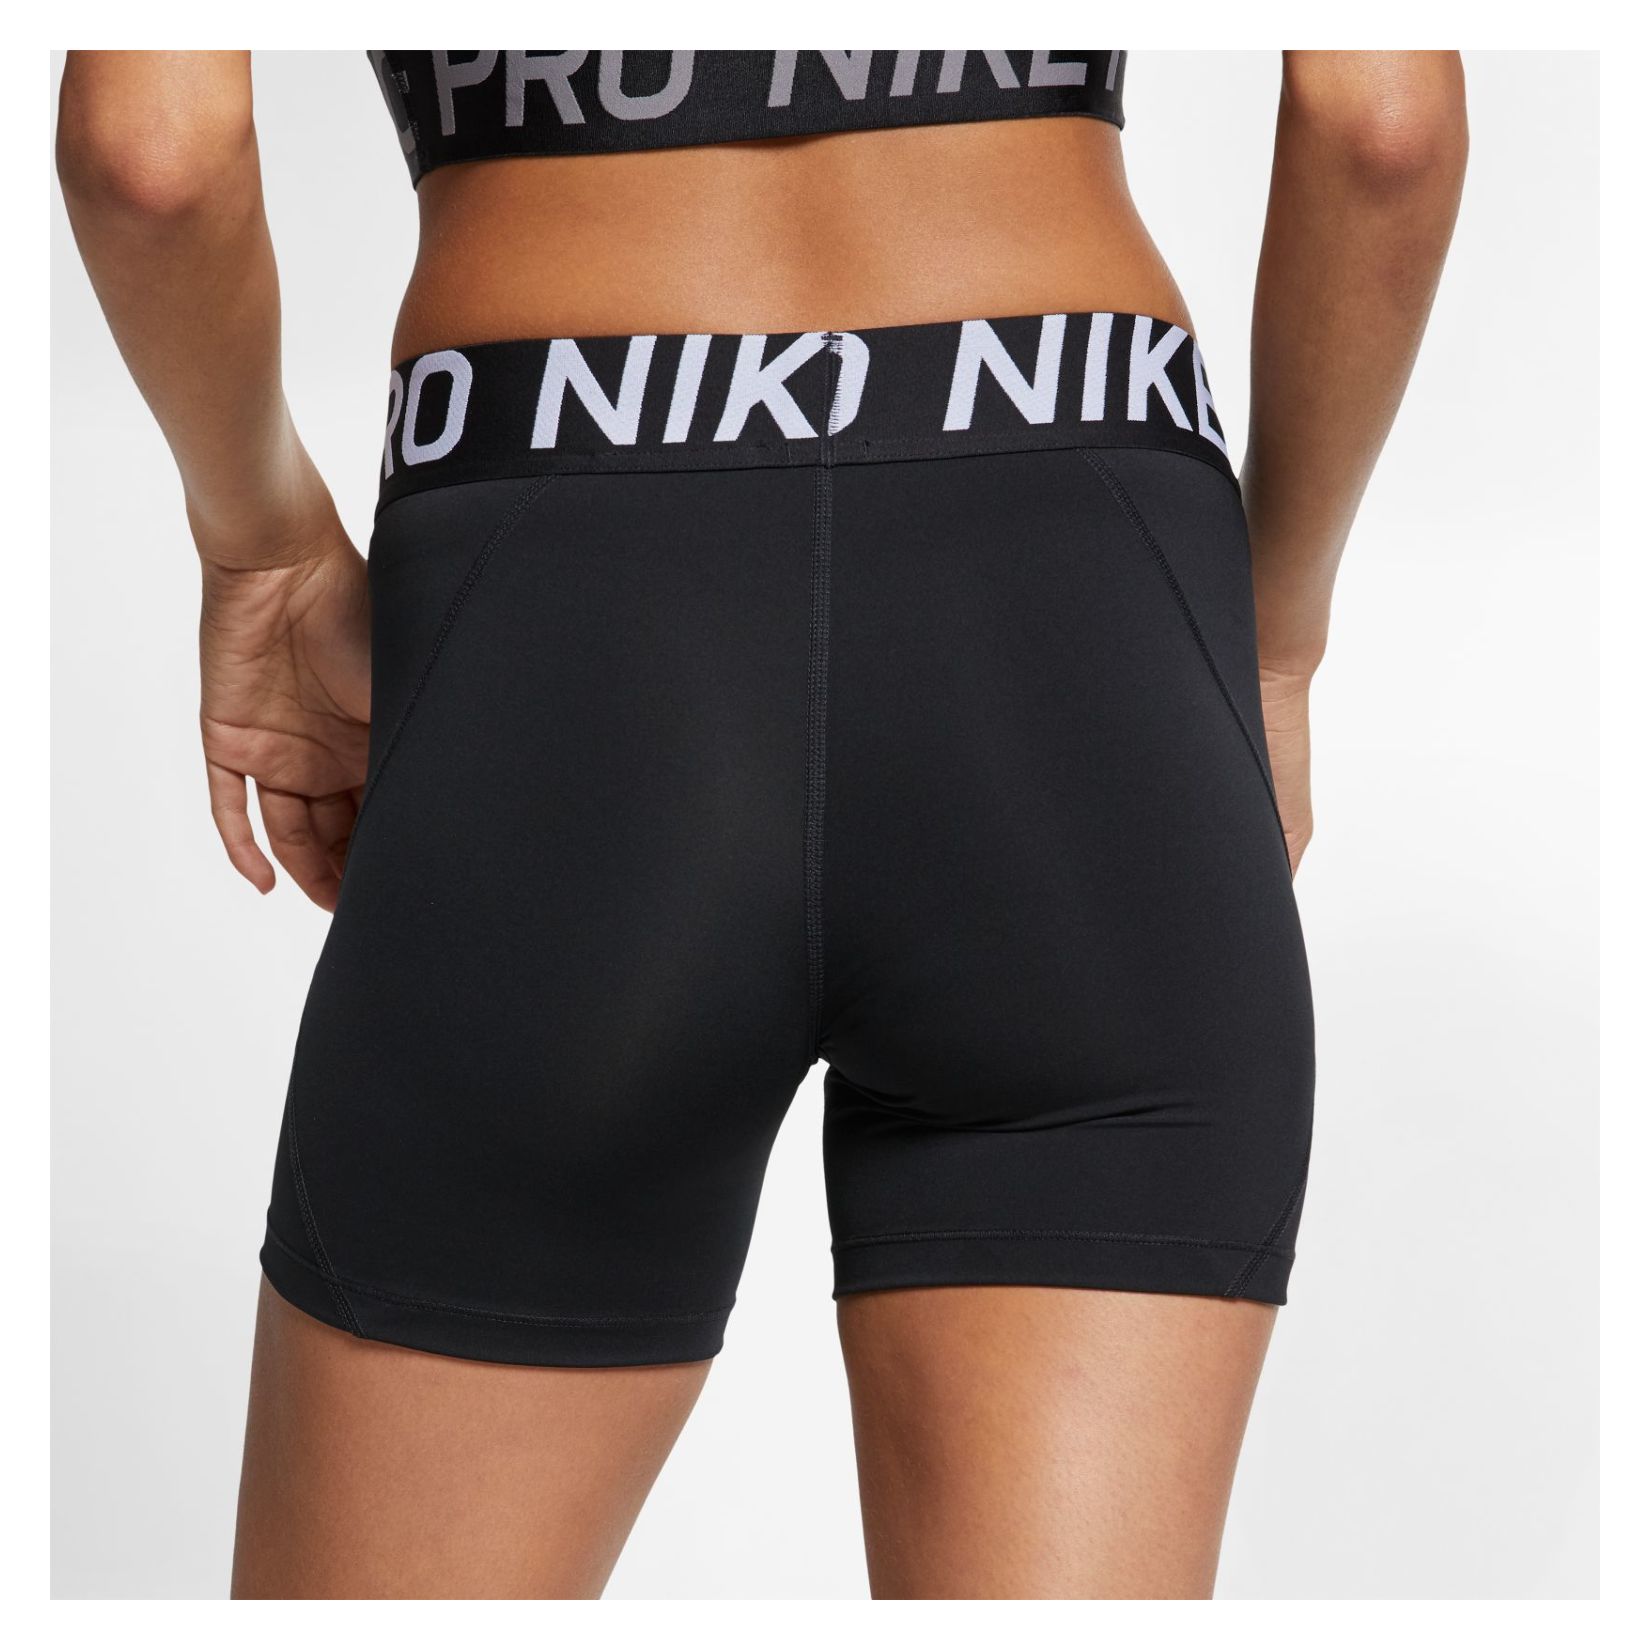 nike pro women's 5 inch shorts